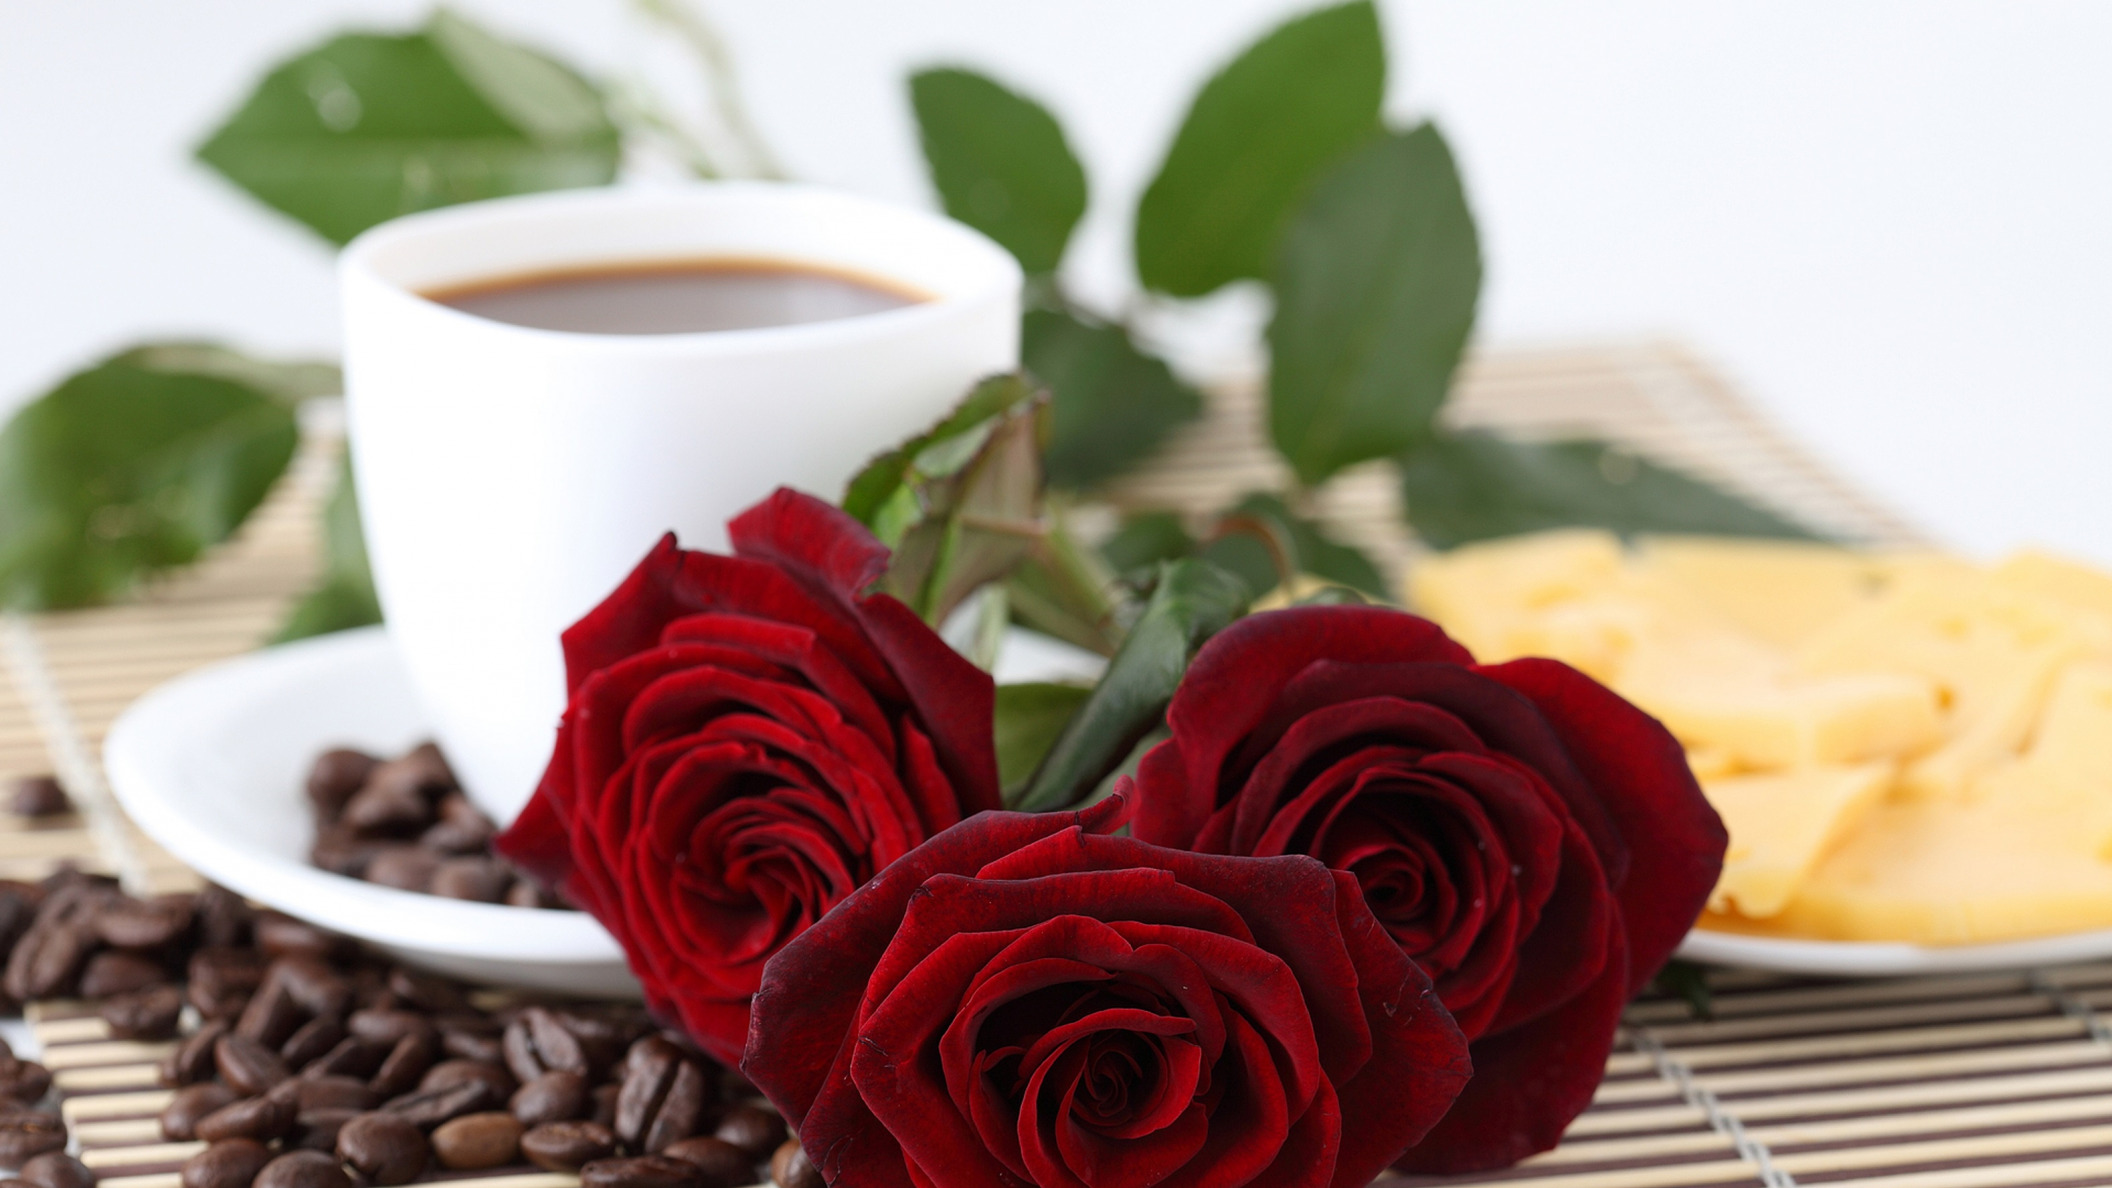 Доброе утро хорошего дня с розами и прекрасного настроения